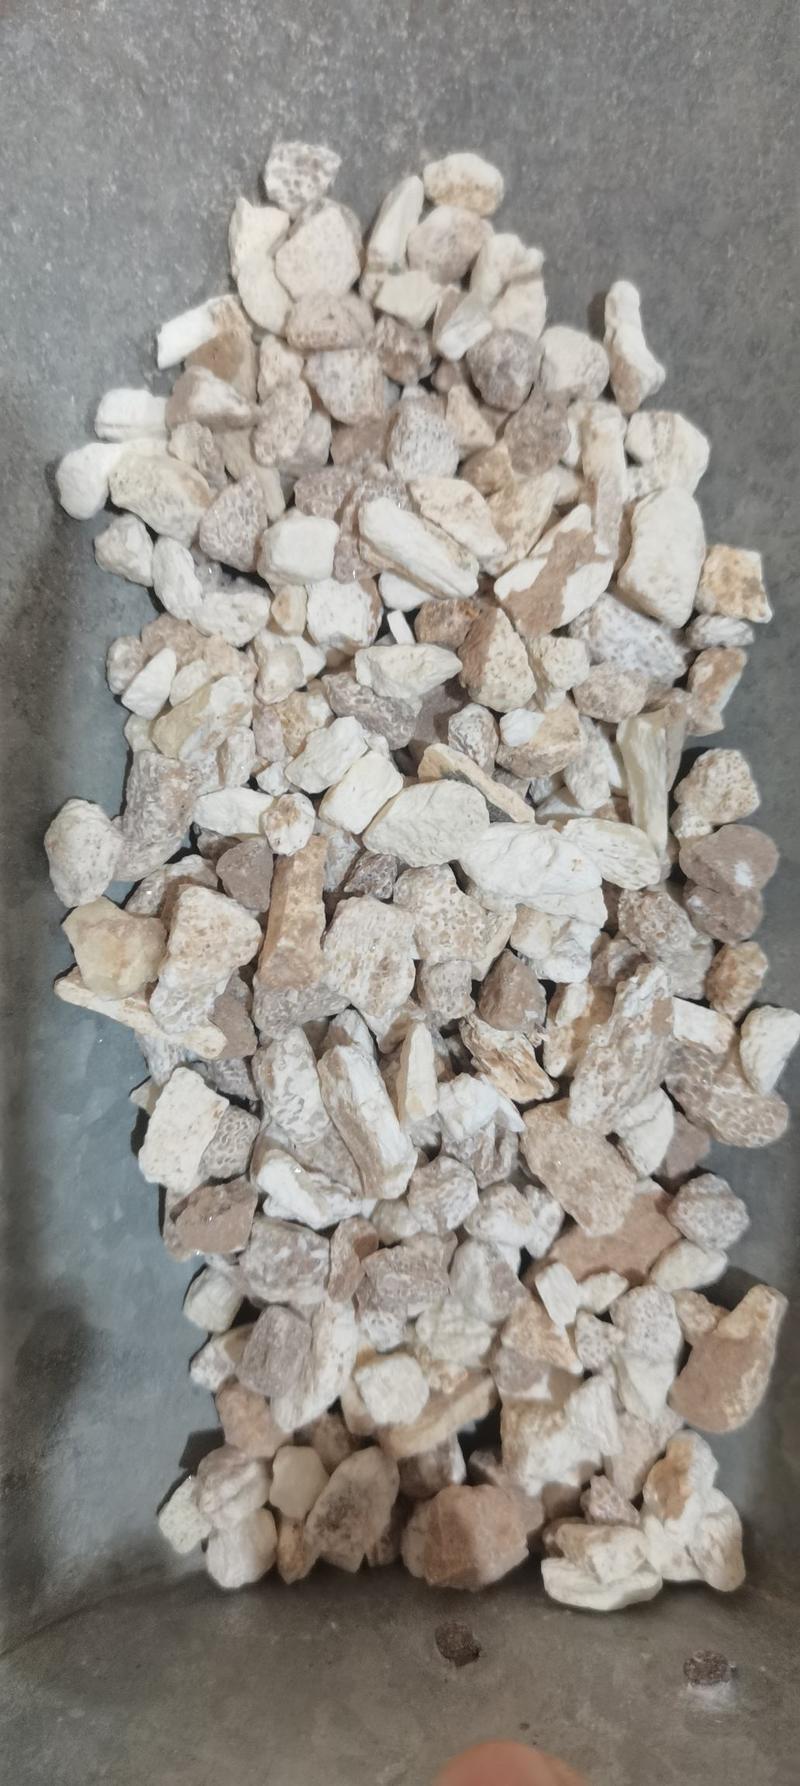 龙骨生龙骨煅龙骨一公斤起批各种矿石类中药材